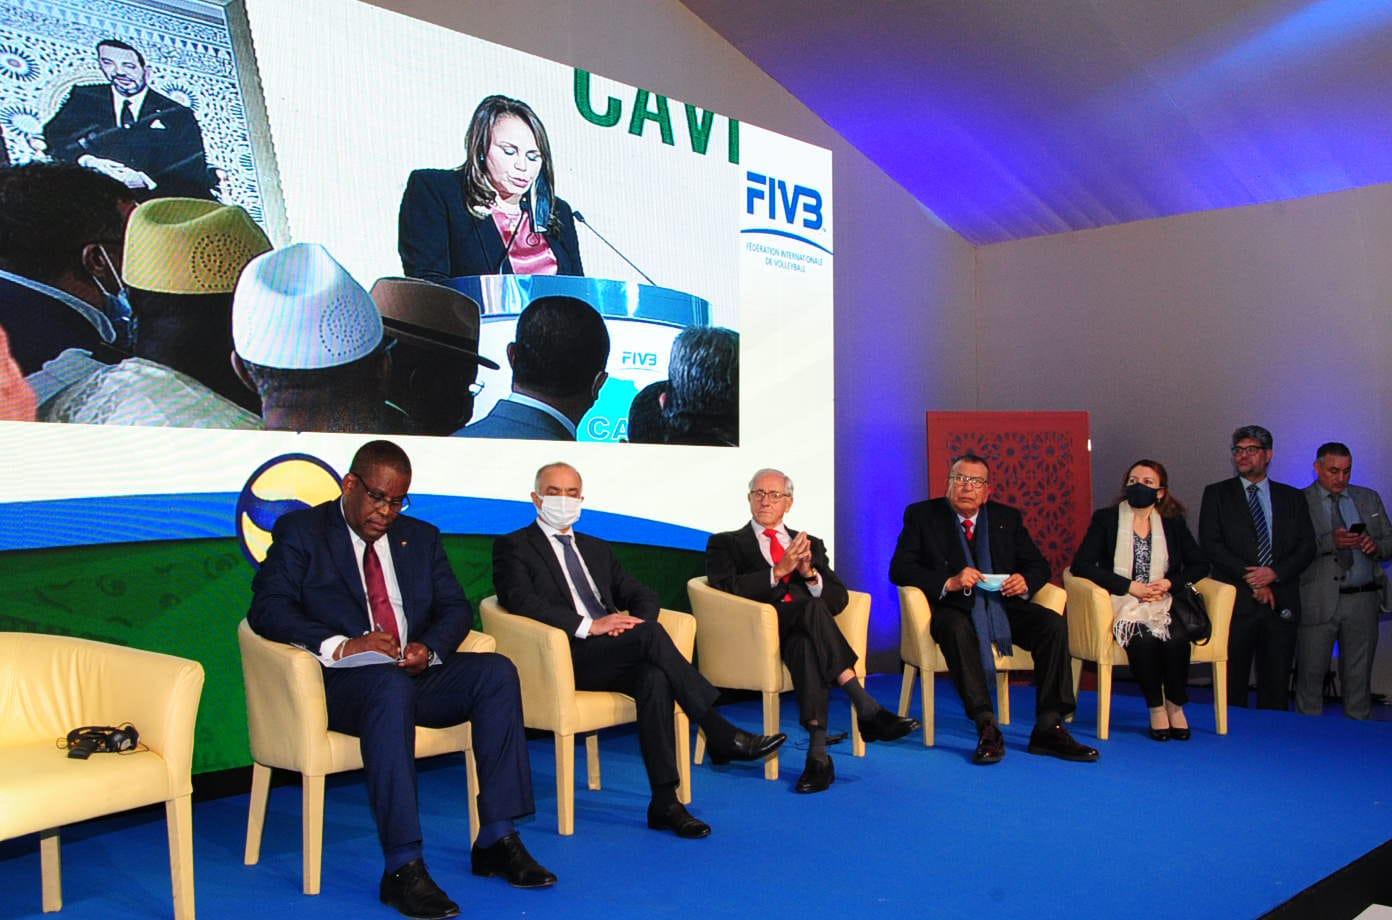 Confédération Africaine de Volley-Ball: Inauguration en grandes pompes du nouveau siège à Rabat